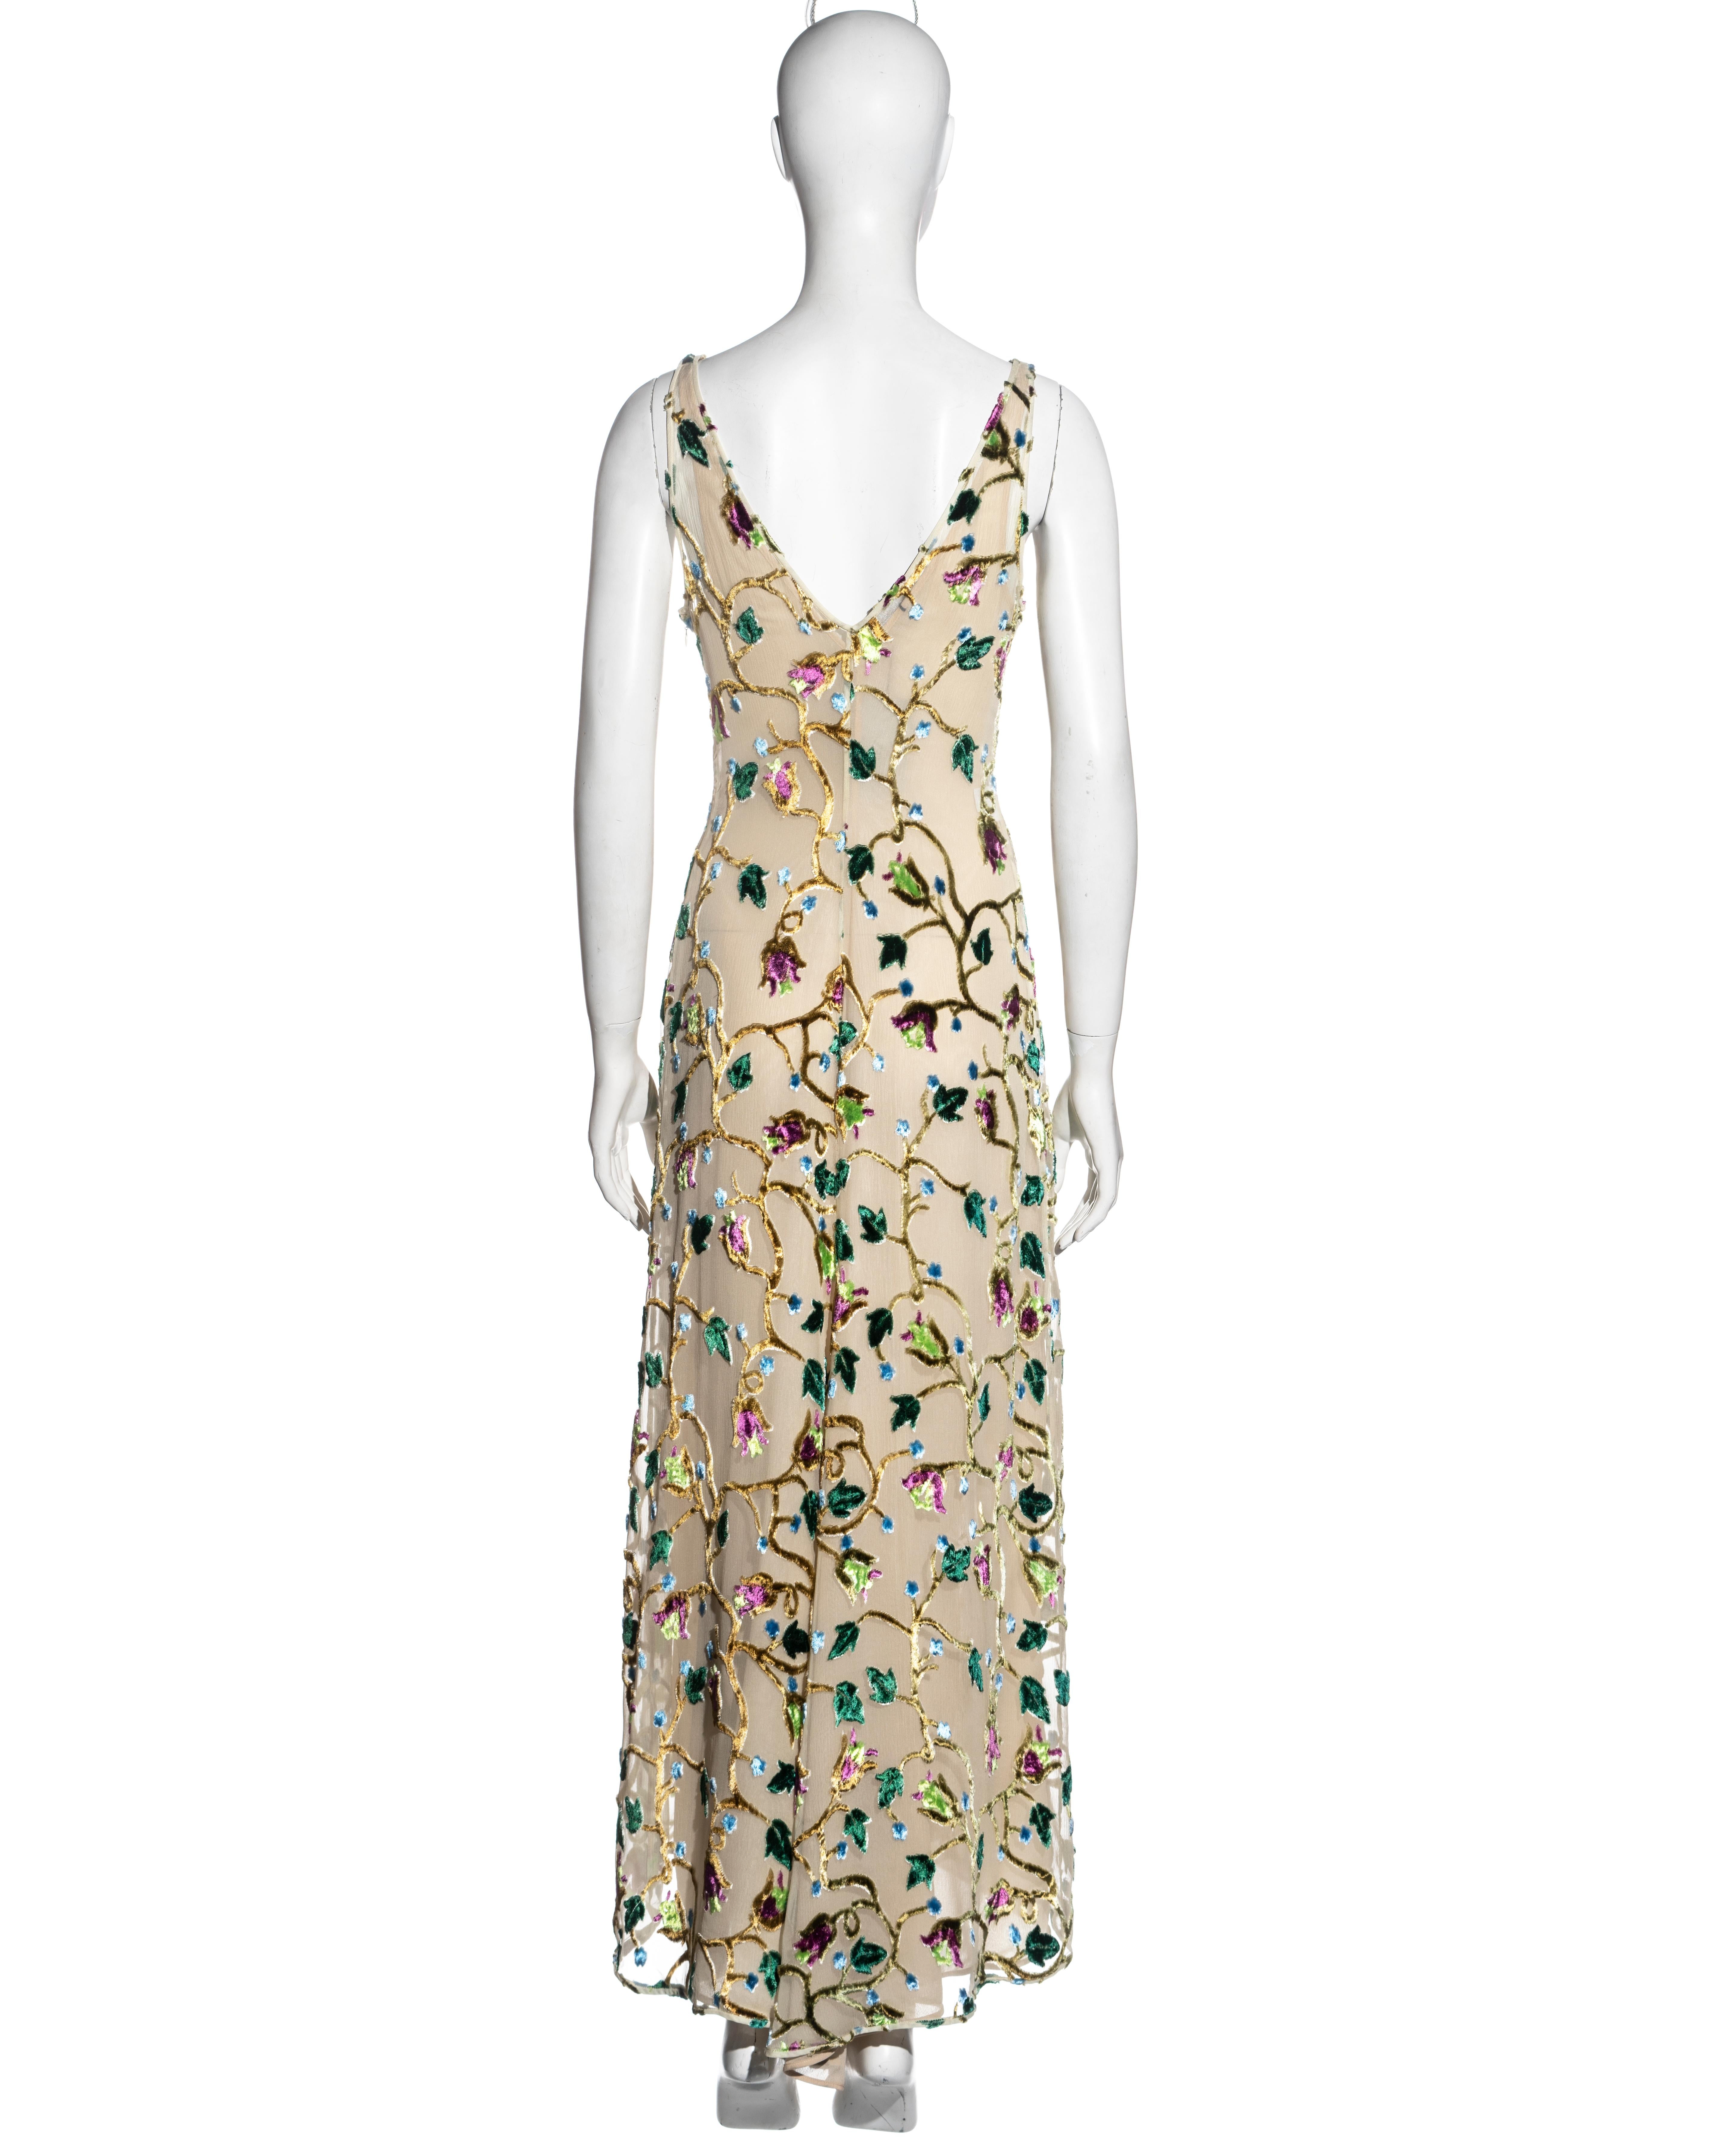 Prada by Miuccia Prada ivory silk devore evening dress, ss 1997 2